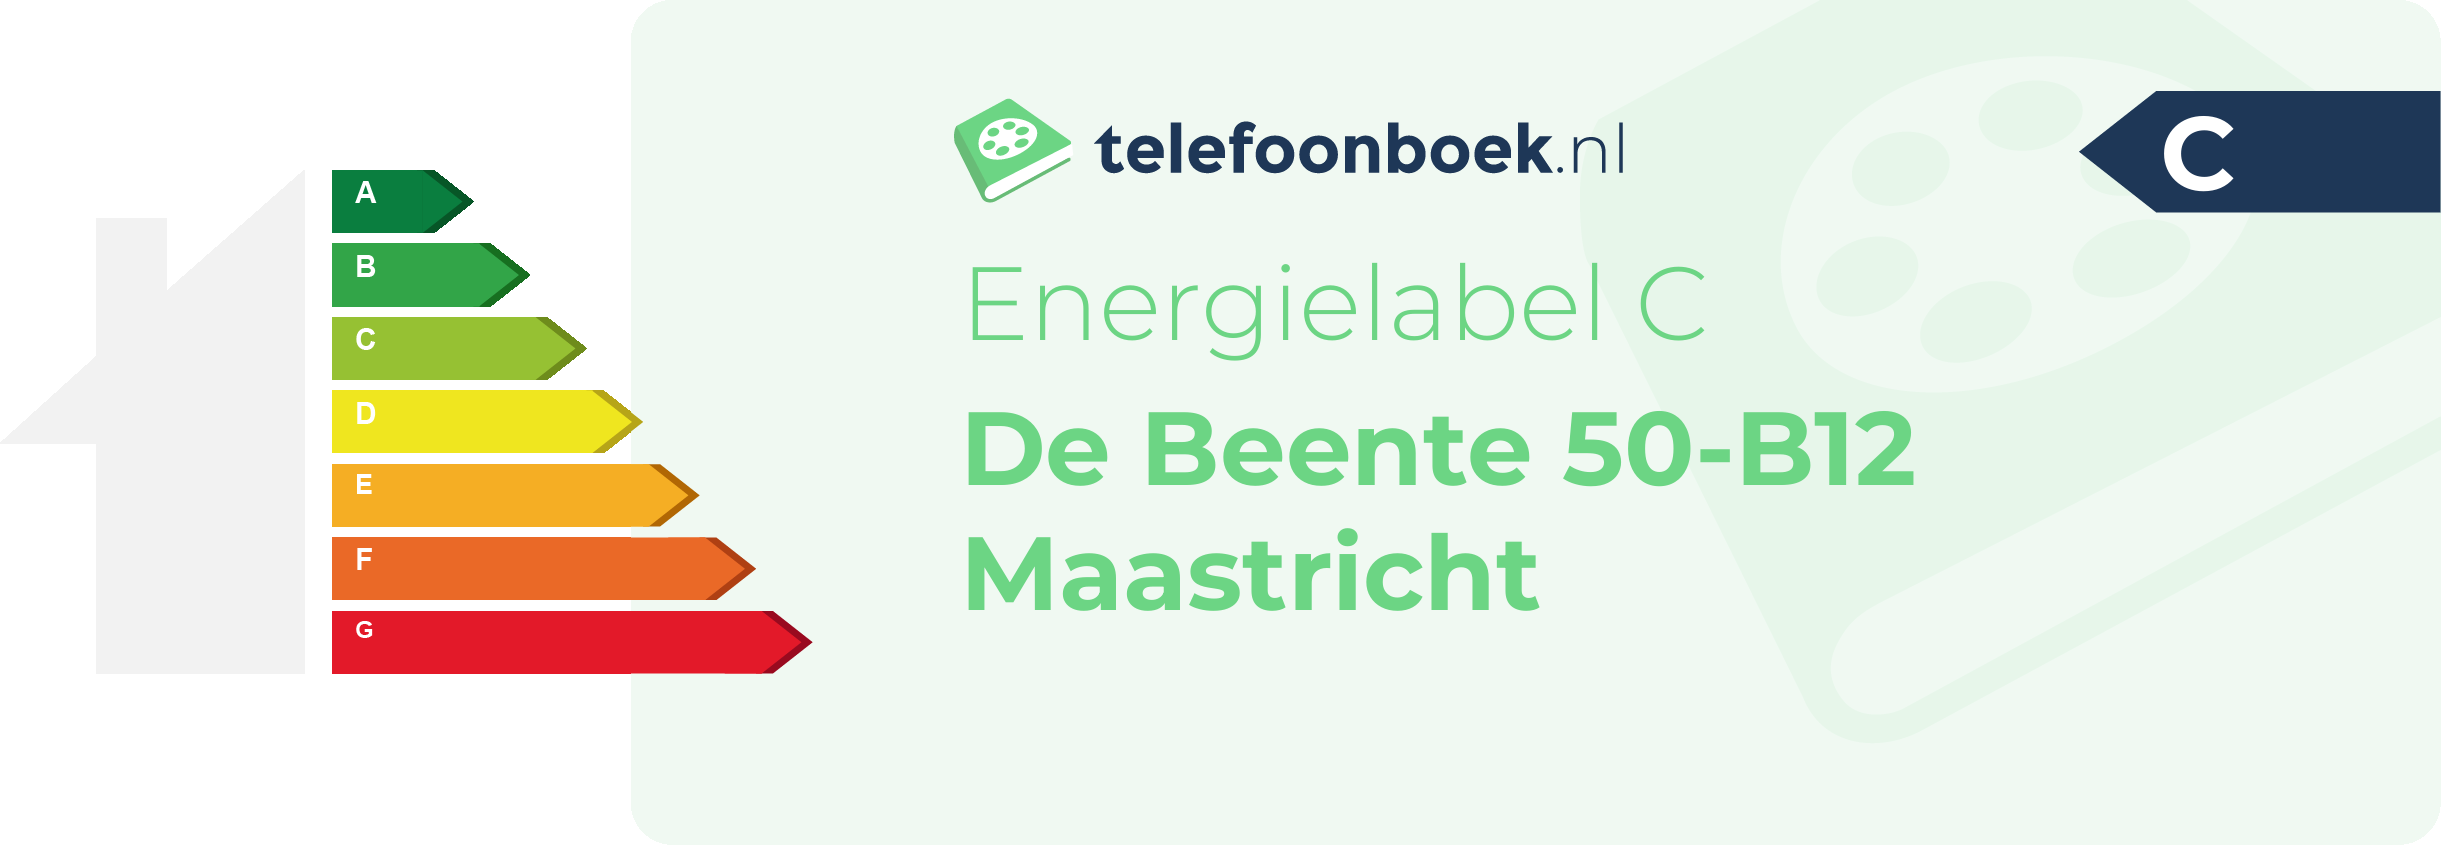 Energielabel De Beente 50-B12 Maastricht